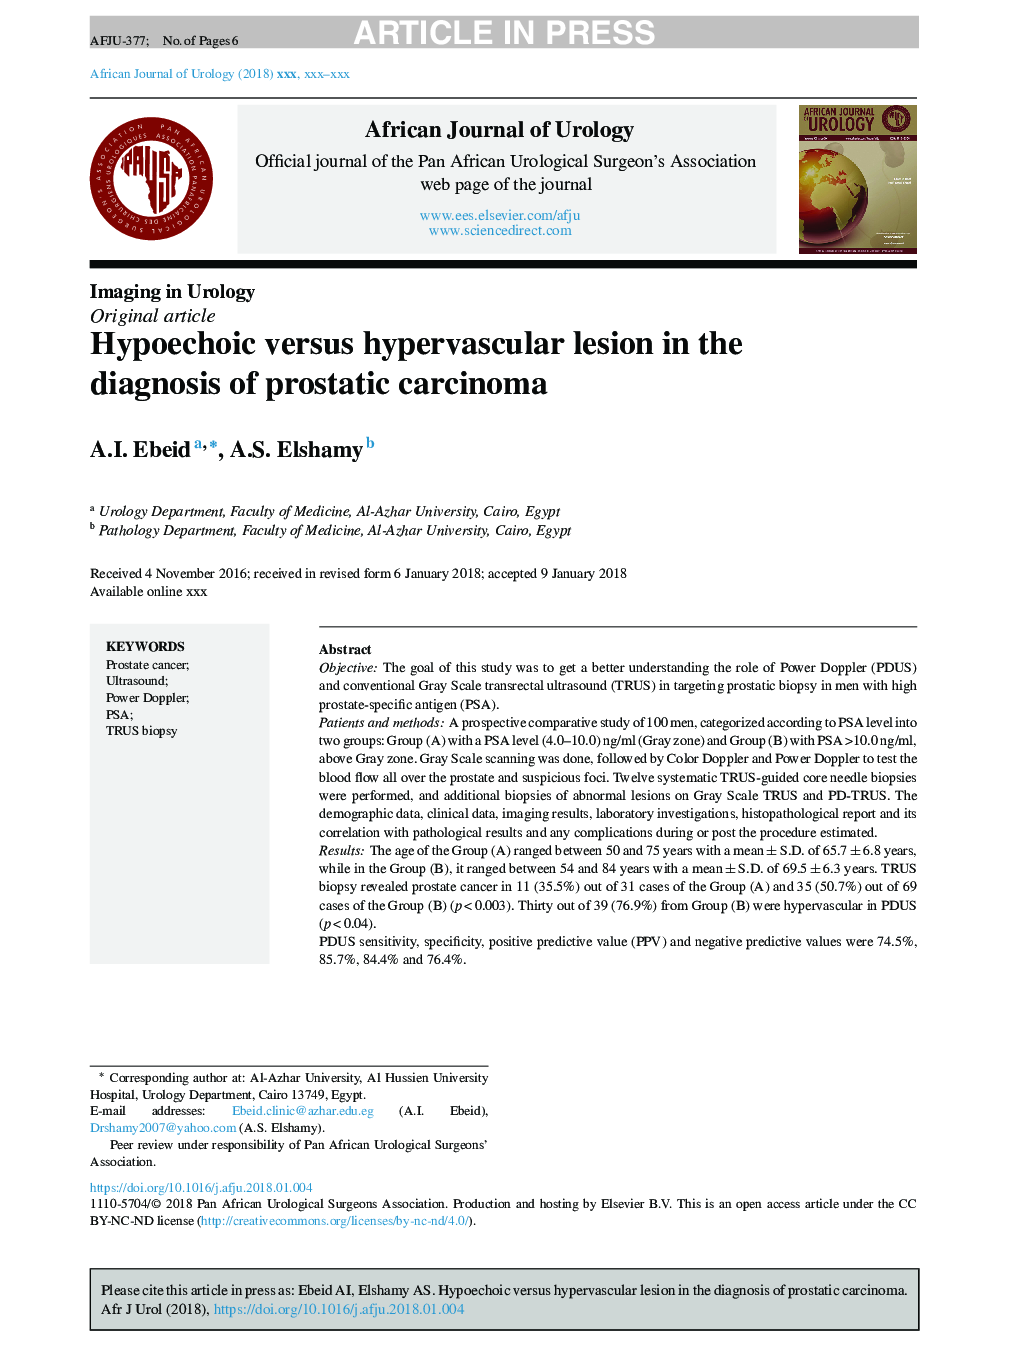 ضایعه هیپوخوآ در مقابل ضایعه هیپاورازکولی در تشخیص کارسینوم پروستات